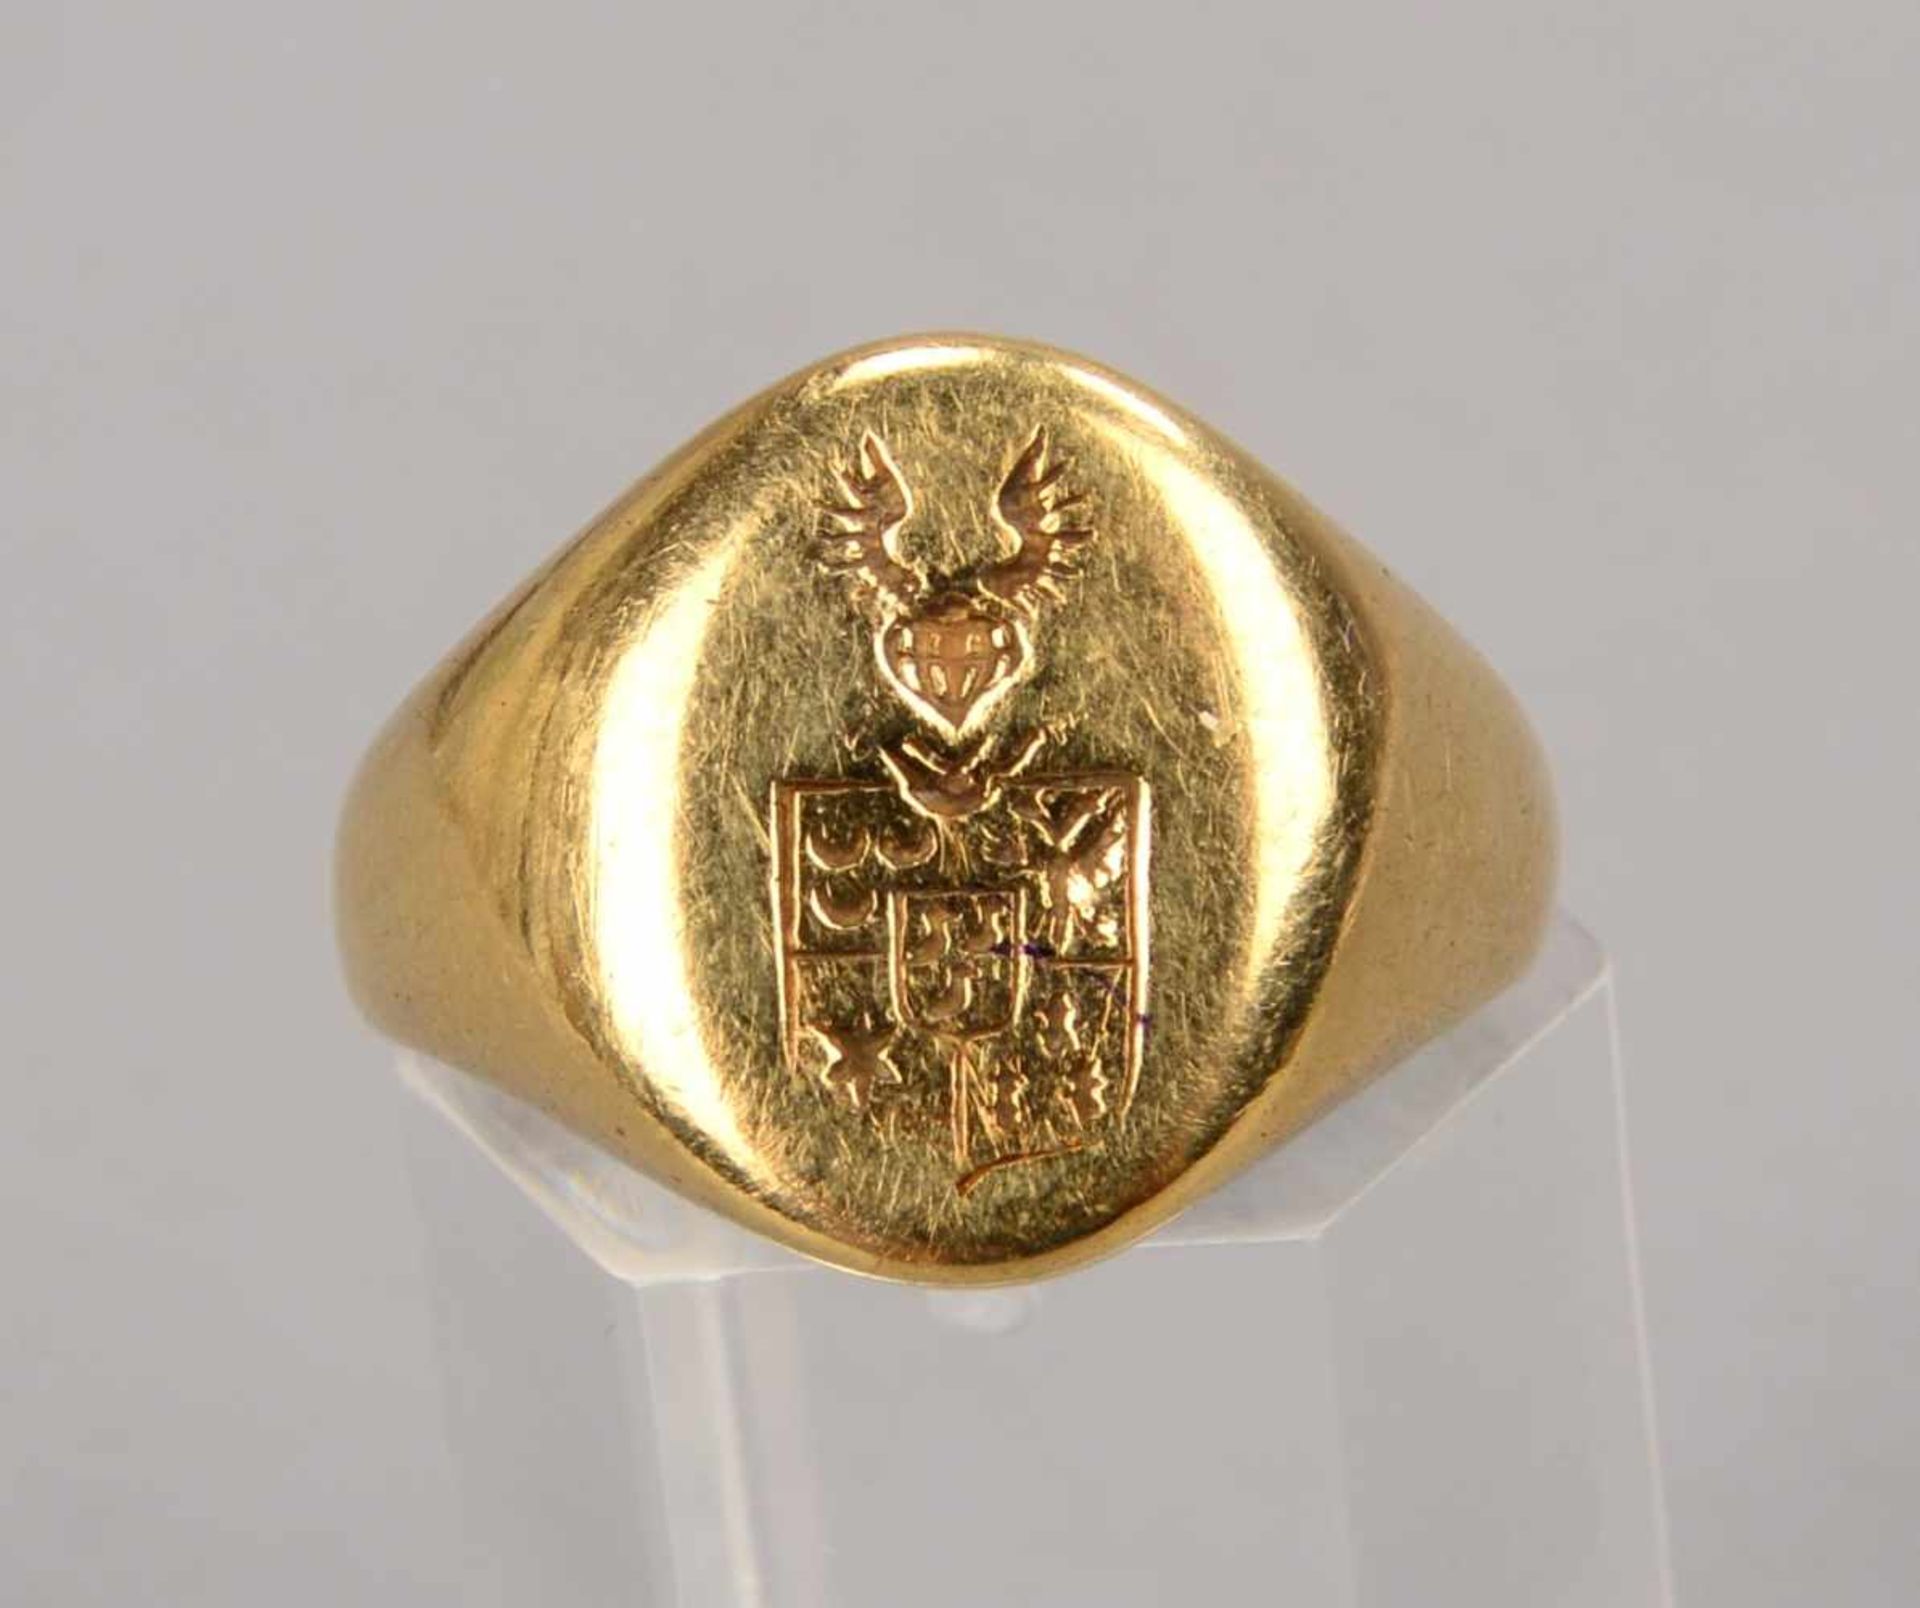 Siegelring, 585 GG, Ringkopf mit Wappenprägung; RG 57, Gewicht 9,73 g - Bild 2 aus 2